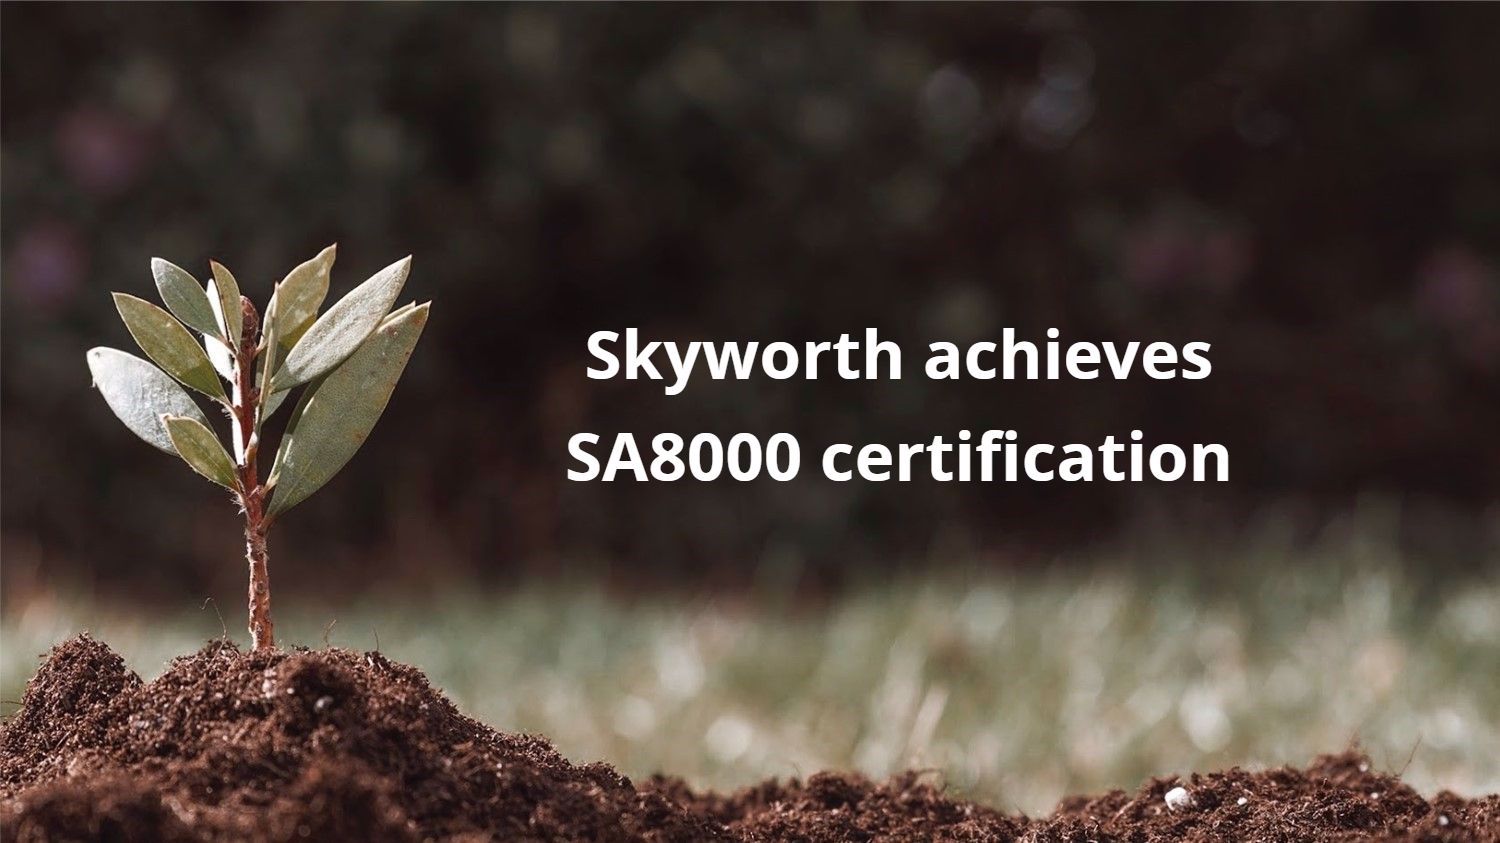 Skyworth achieves SA8000 certification